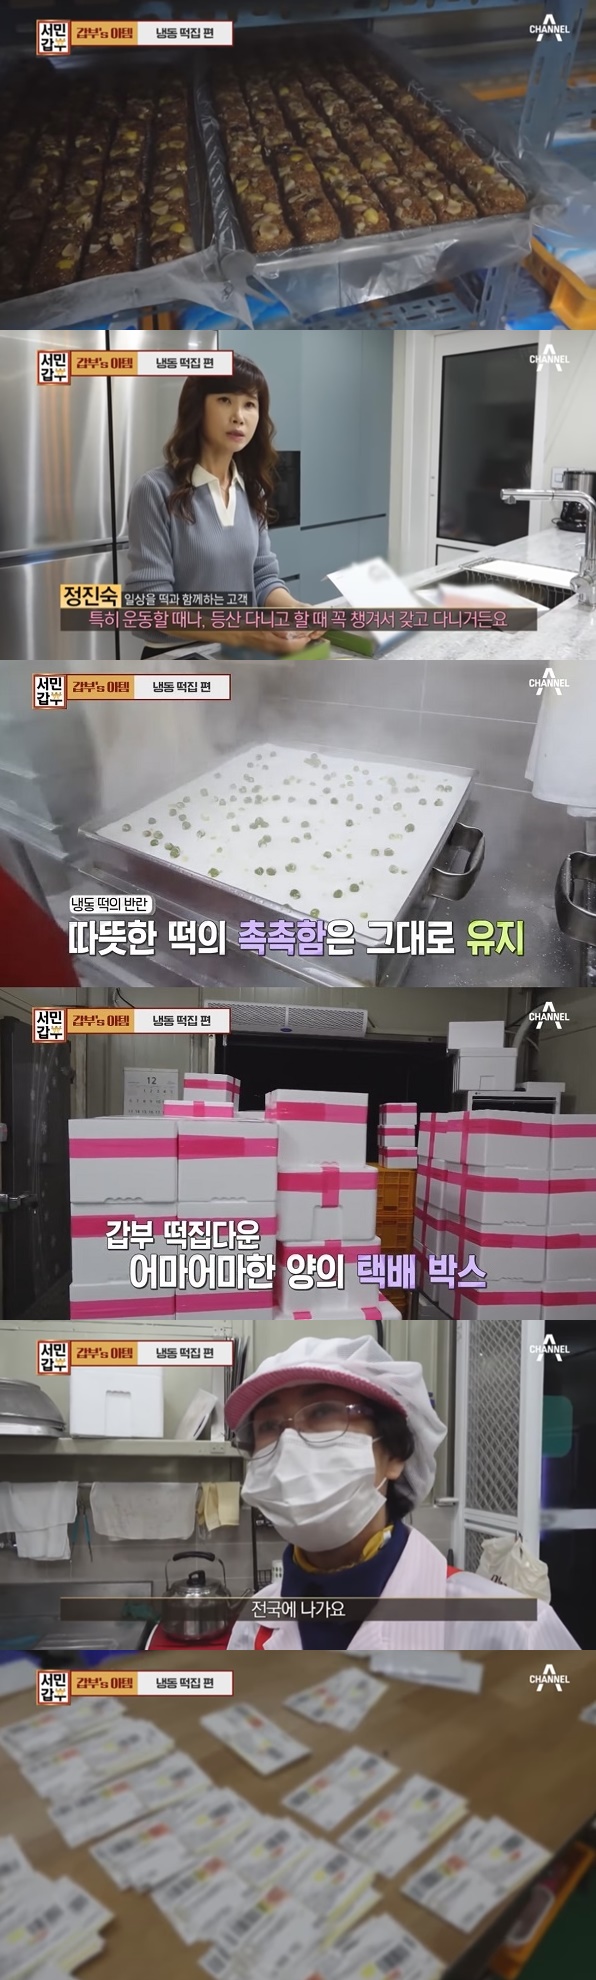 							사진 : ‘서민갑부’ 냉동떡집 영상캡쳐